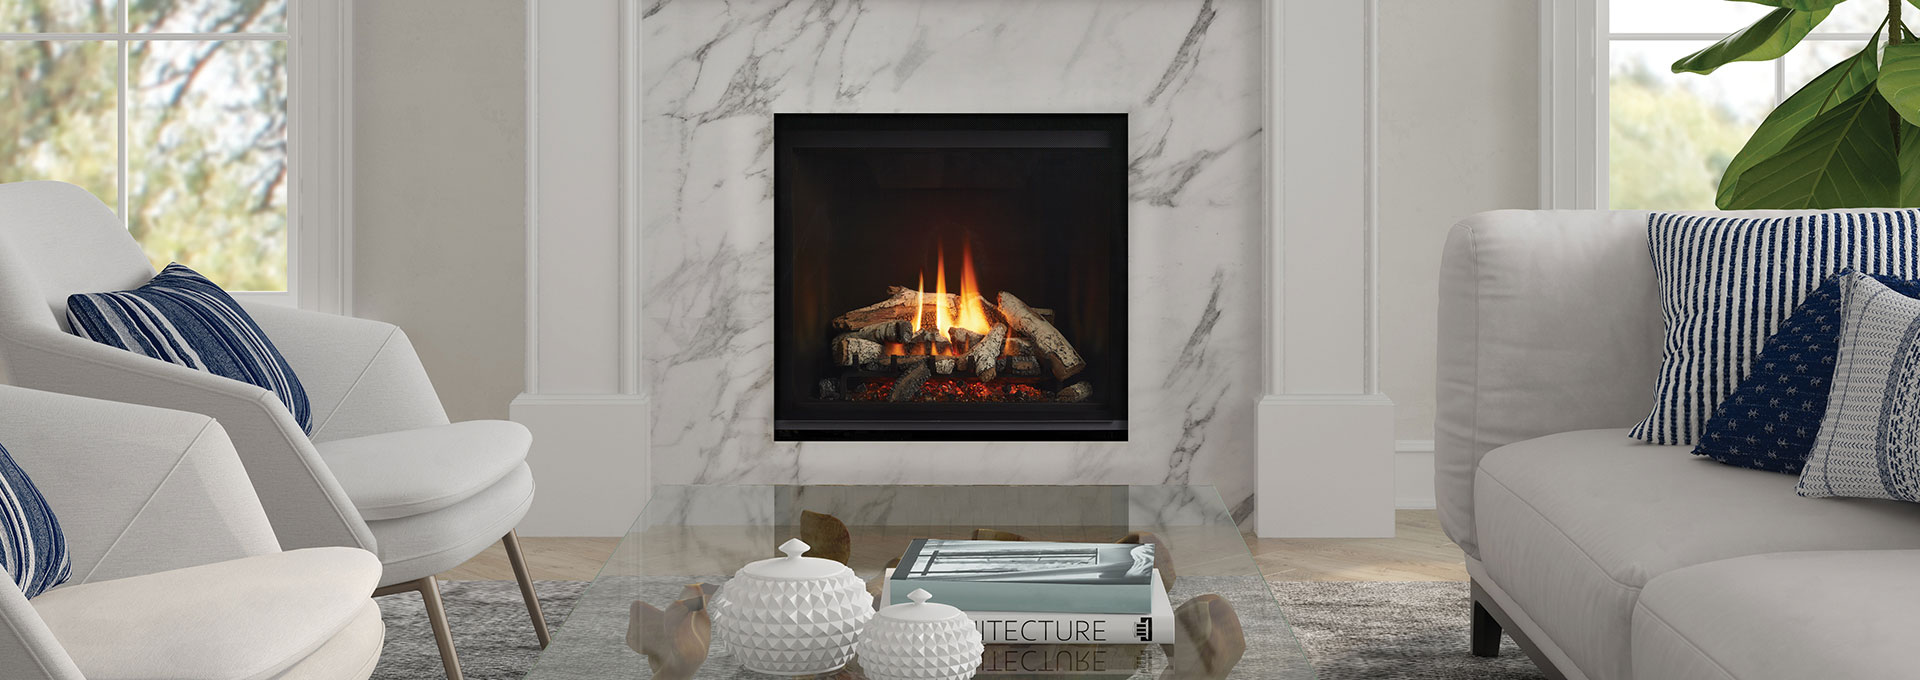 Regency Gas Fireplace G800